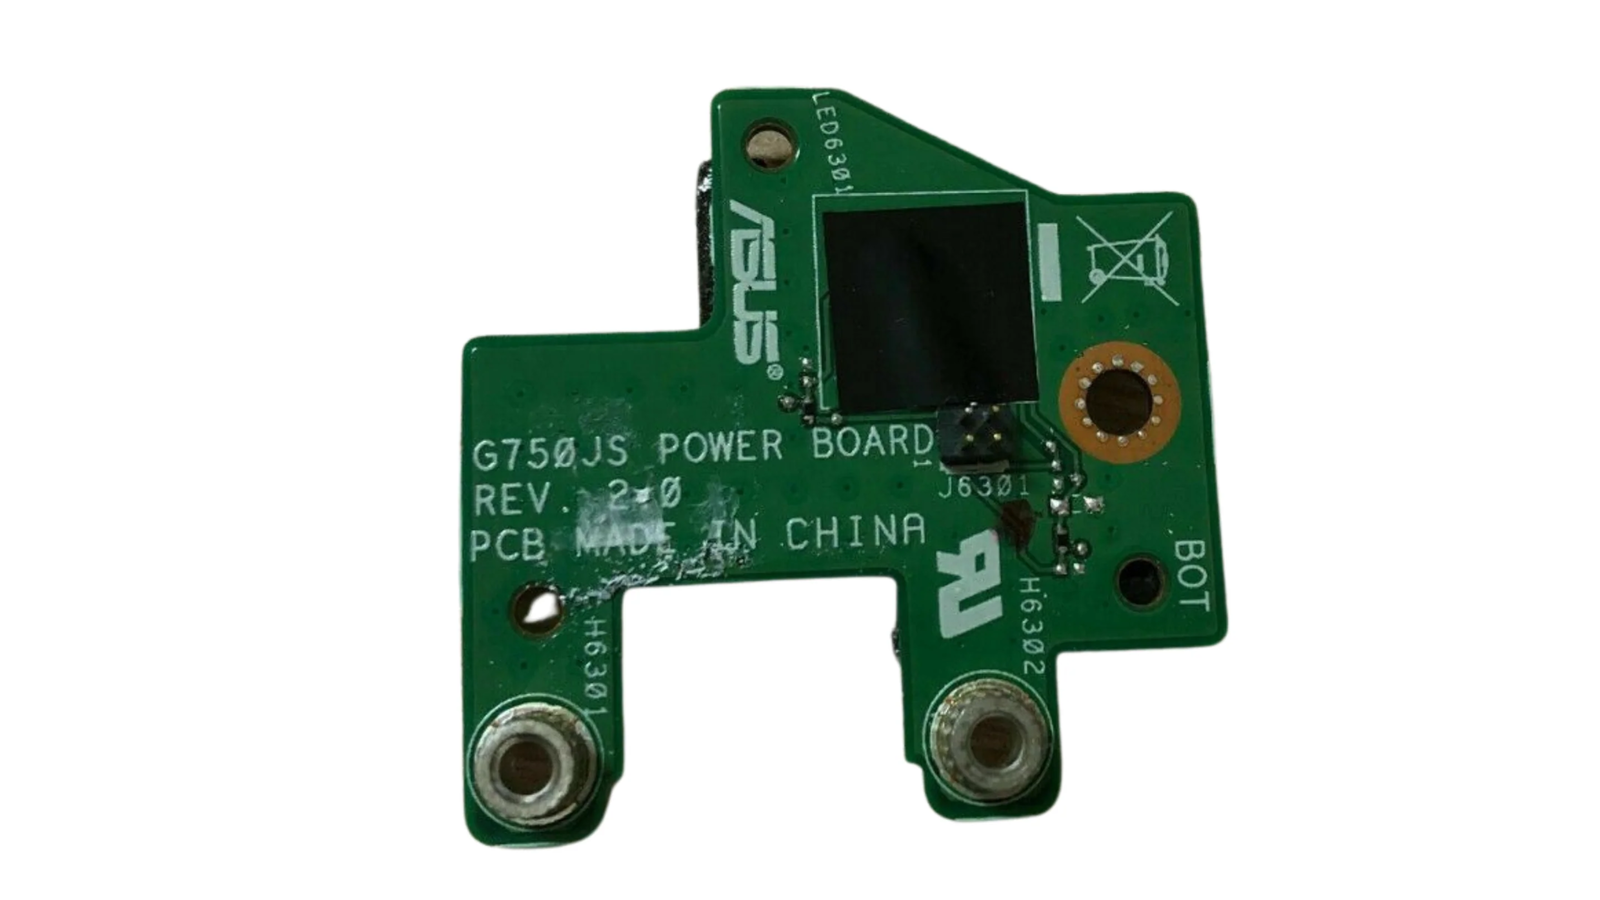 G750JS power board rev. 2.0